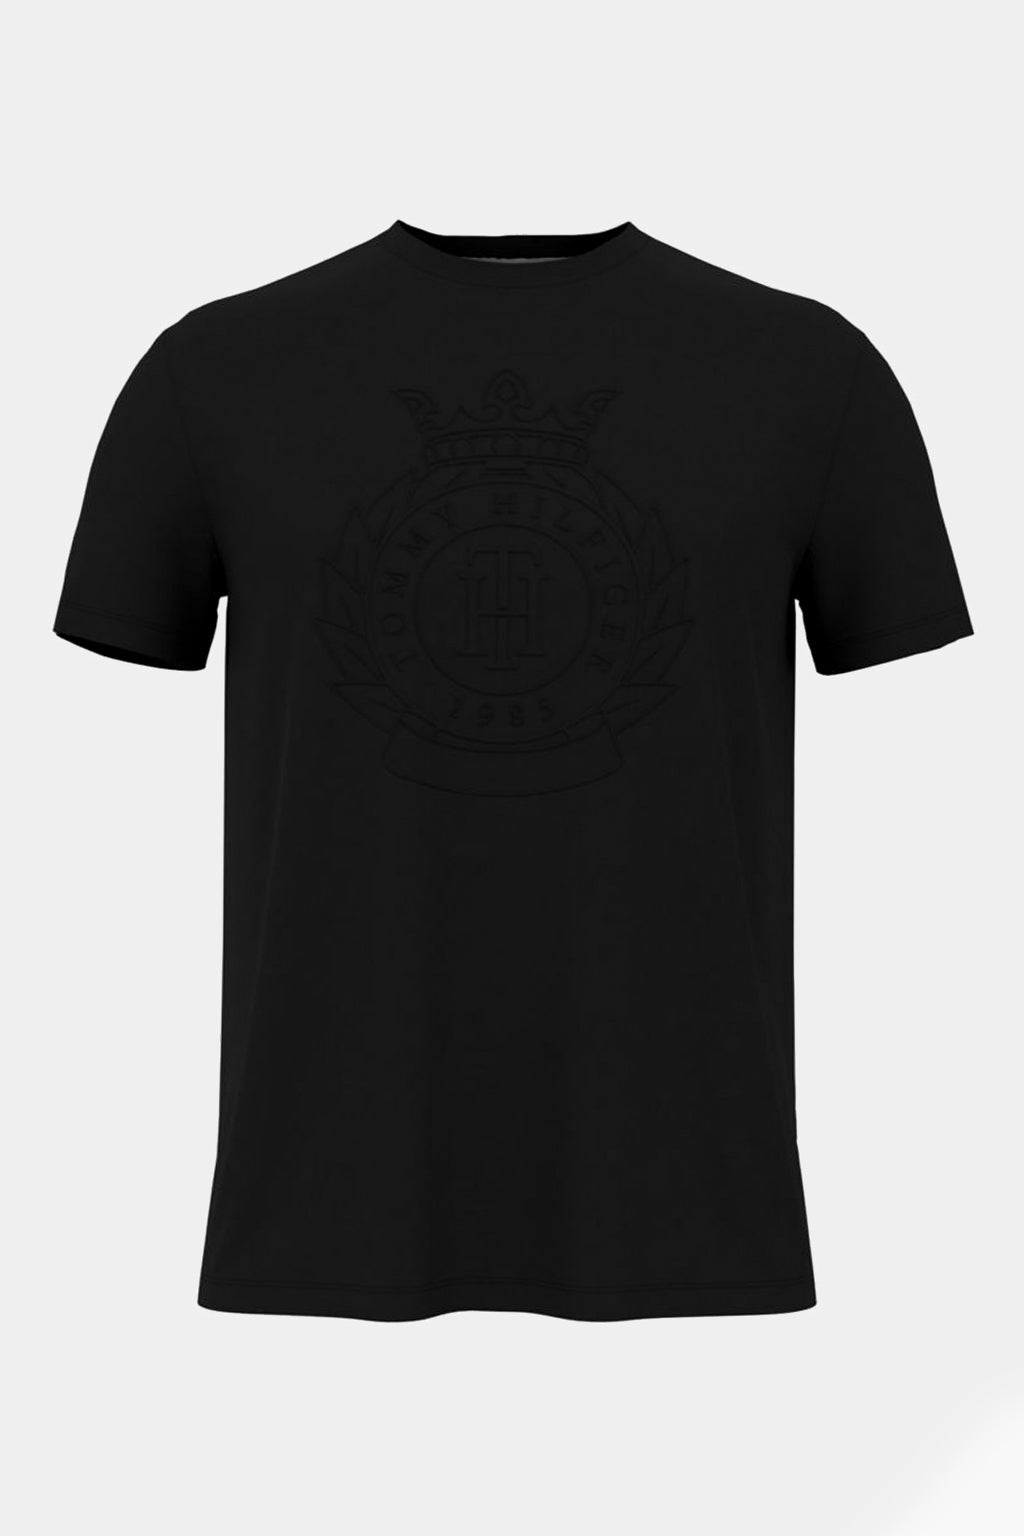 Tommy Hilfiger - Crest Logo Tshirt